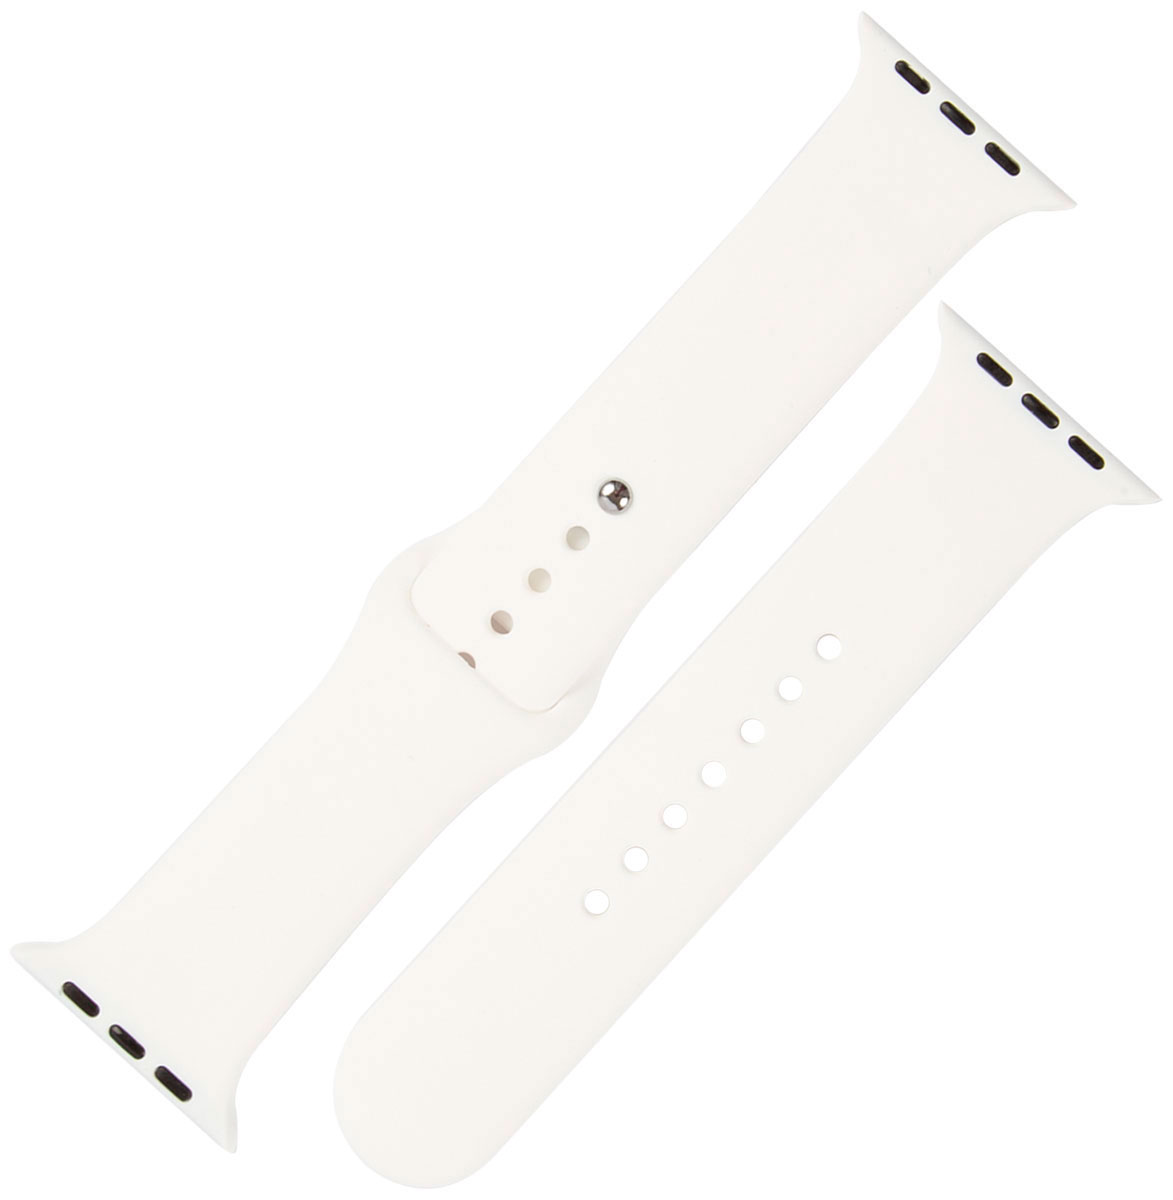 Ремешок силиконовый mObility для Apple watch - 38-40 мм (S3/S4/S5 SE/S6), белый ремешок нейлоновый mobility для apple watch 38 40 мм s3 s4 s5 se s6 белый